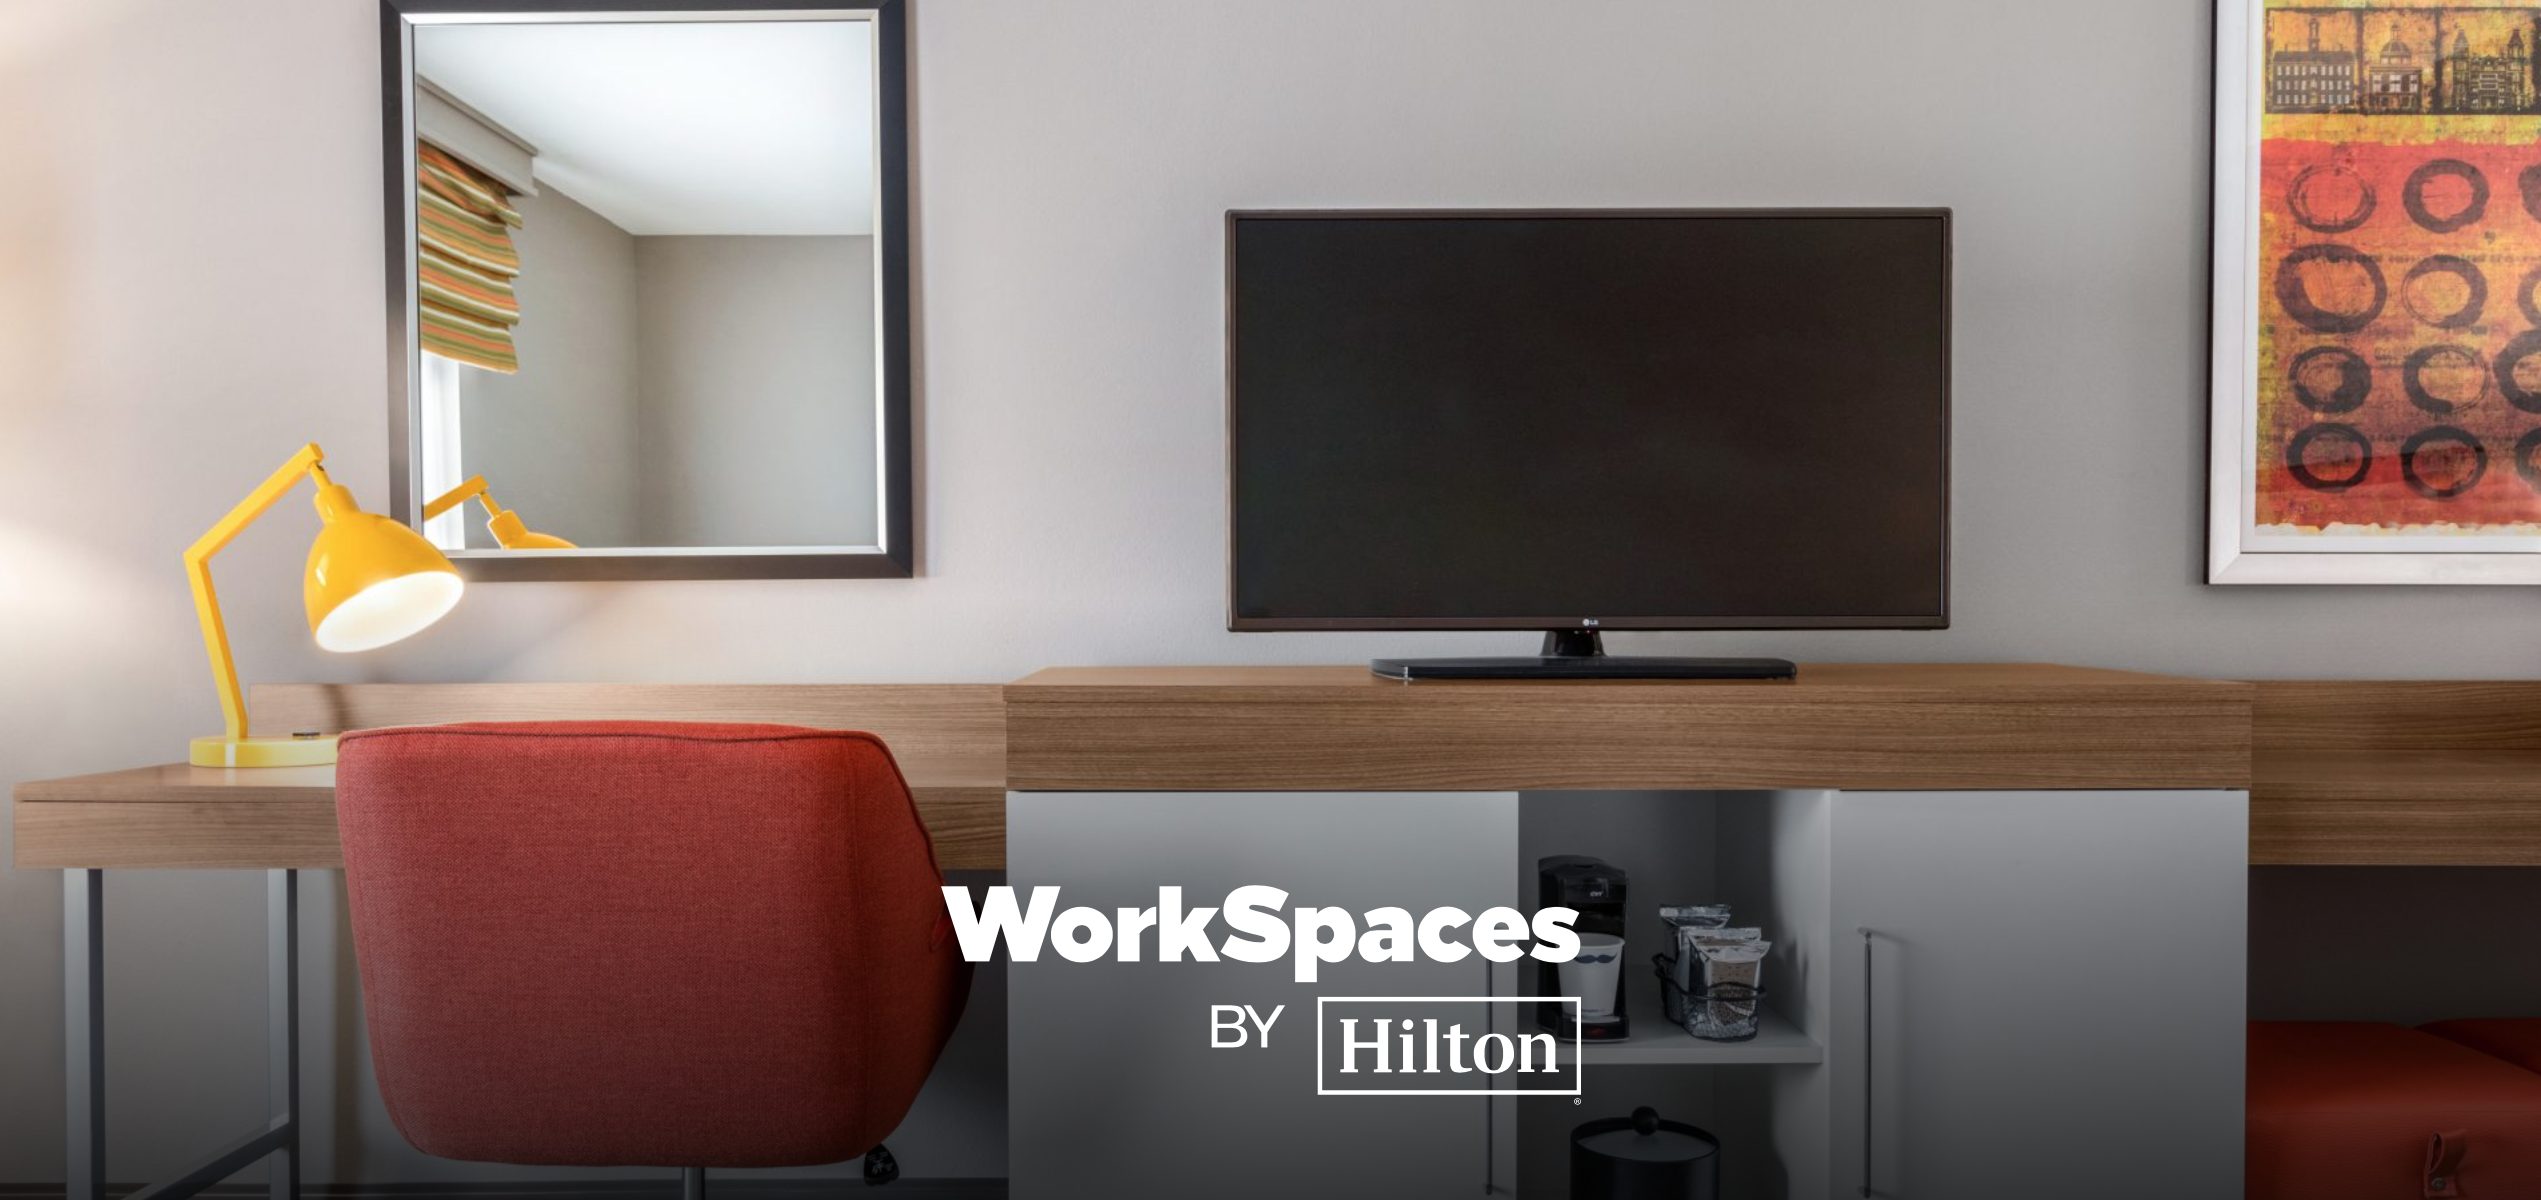 ヒルトンのデイユースプラン 「WorkSpace by Hilton」